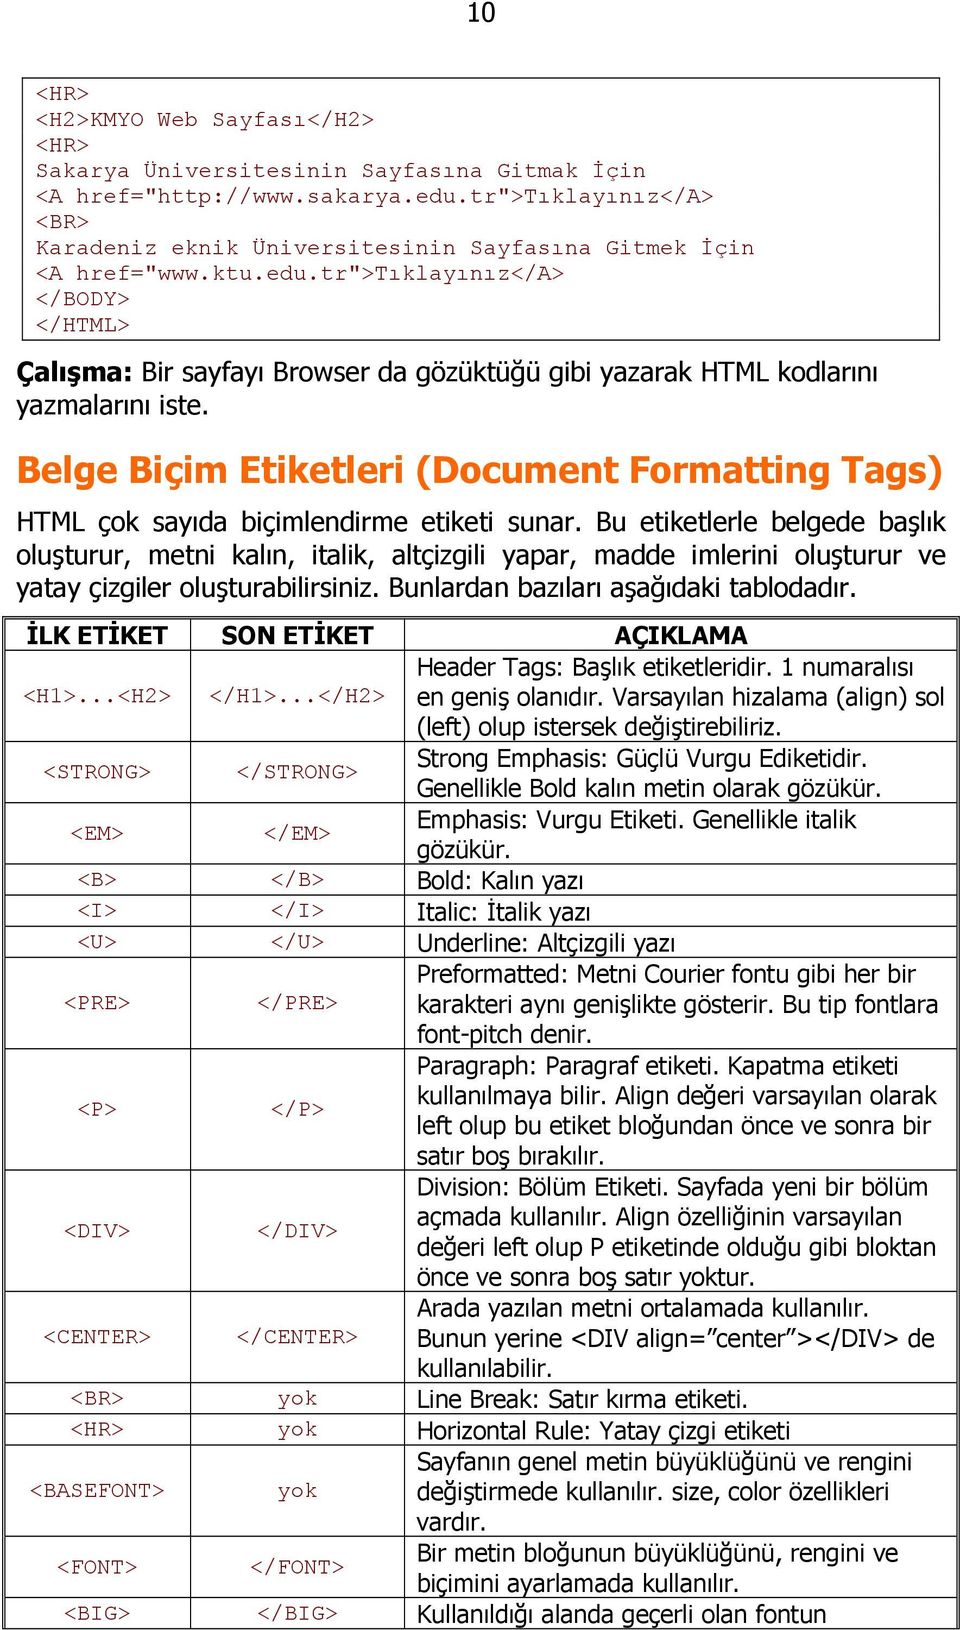 tr">tıklayınız</a> Çalışma: Bir sayfayı Browser da gözüktüğü gibi yazarak HTML kodlarını yazmalarını iste.